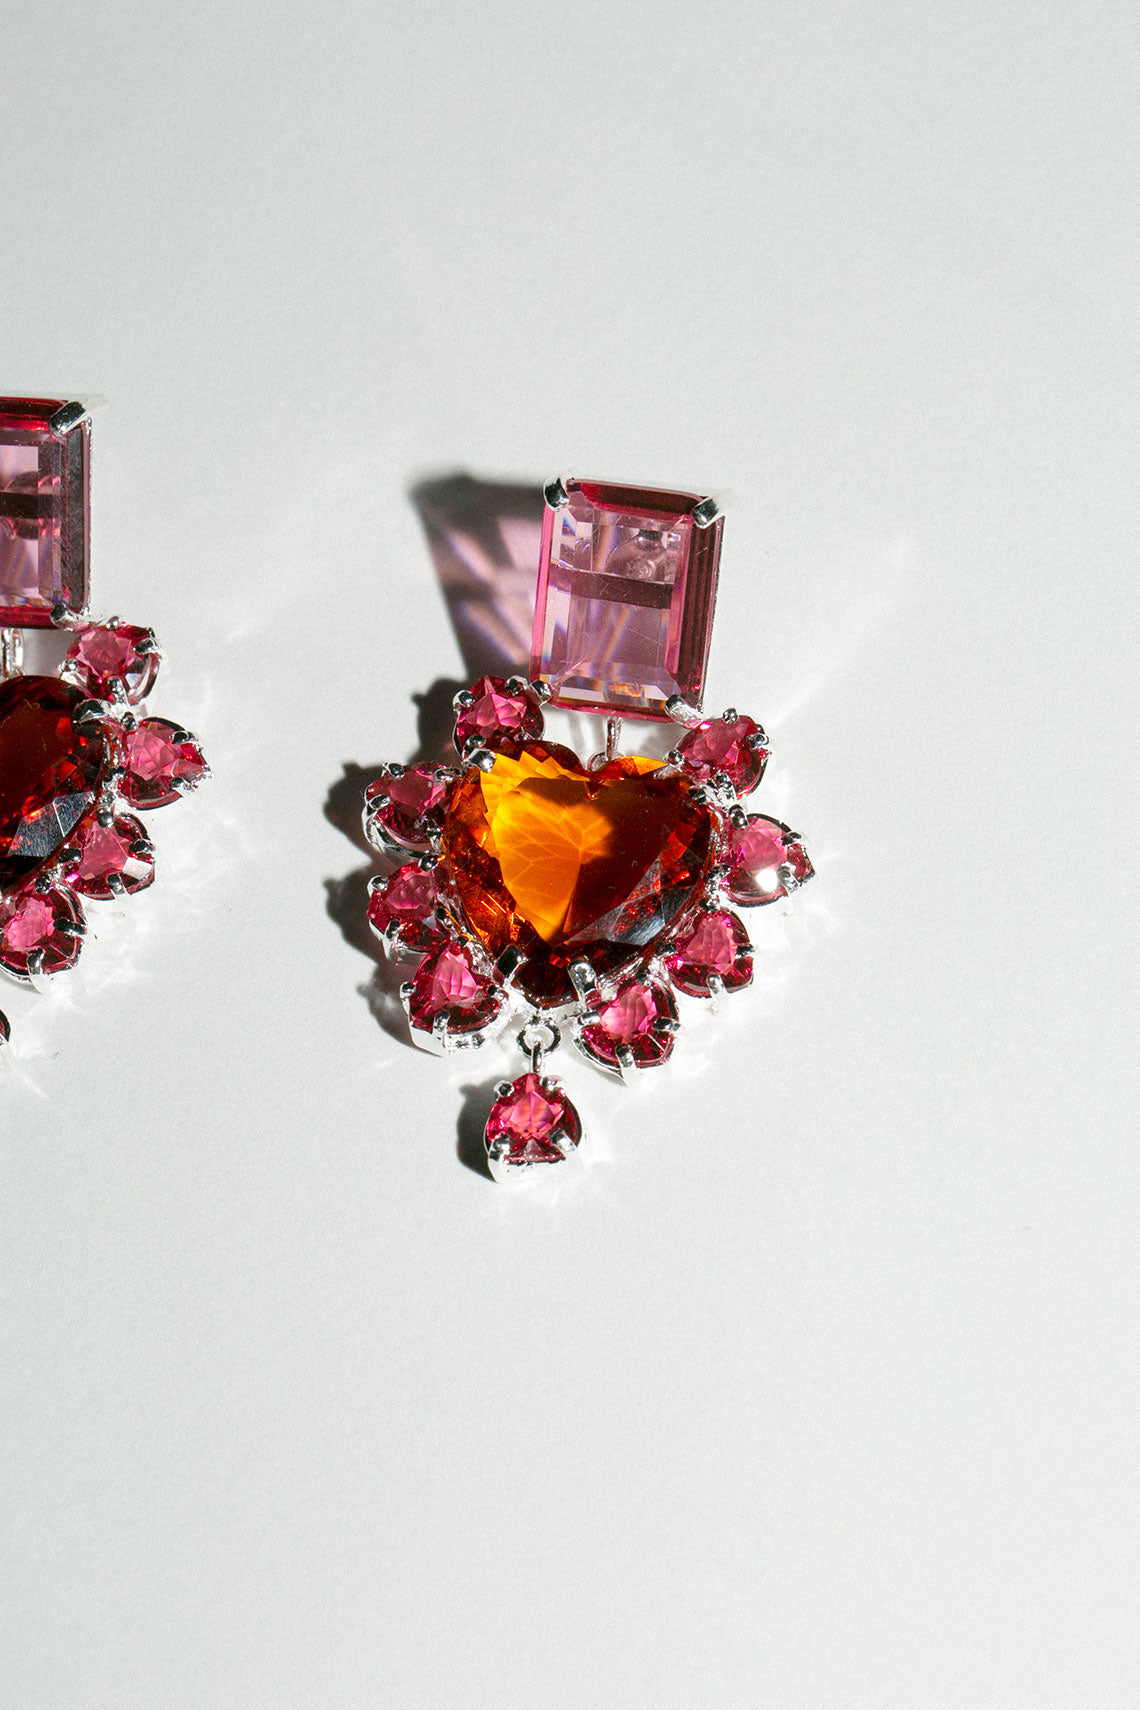 Pink & Orange El Sabor Earrings